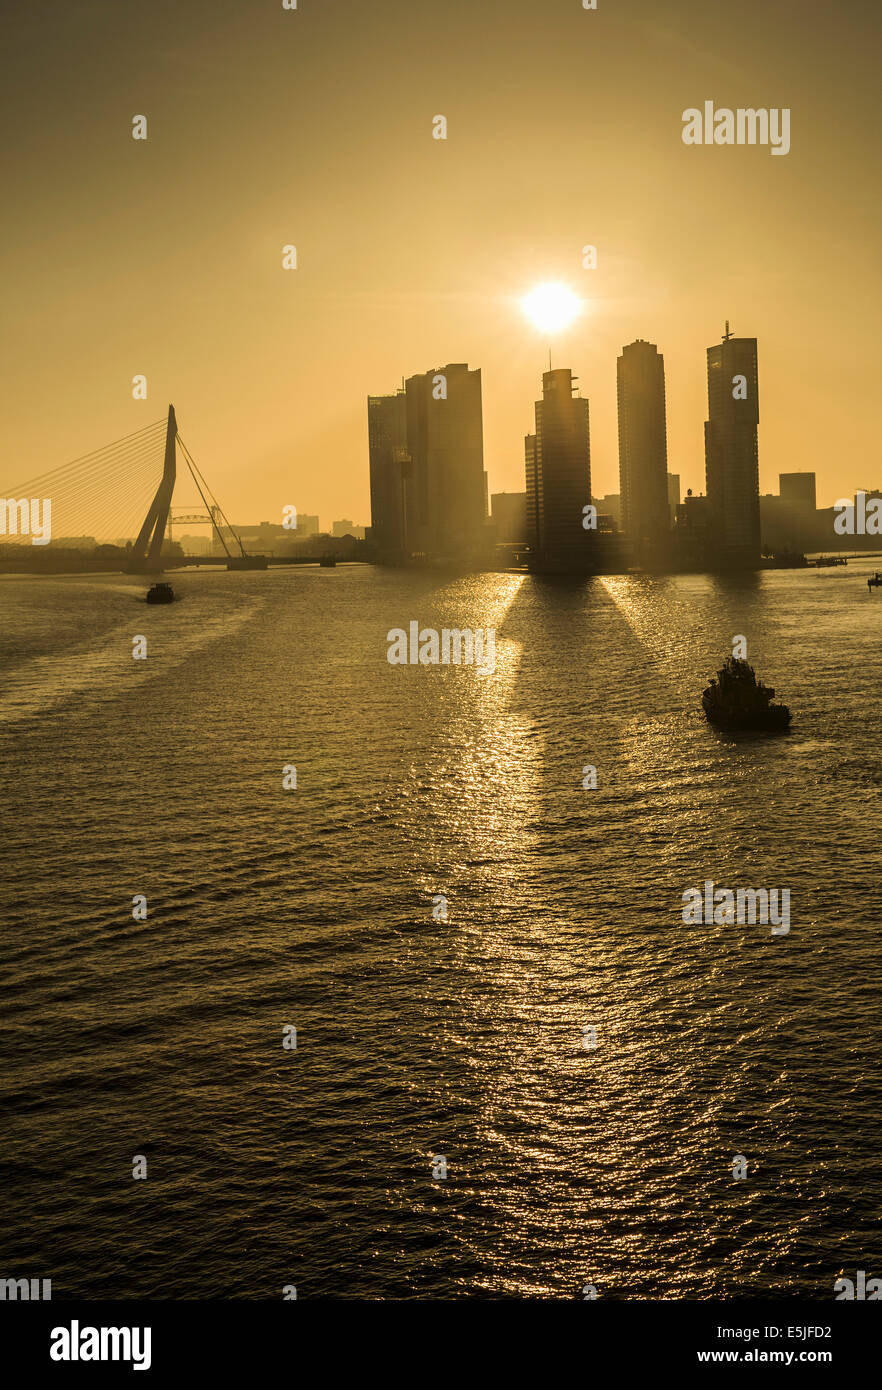 Niederlande, Rotterdam, Kop van Zuid-Viertel mit Kreuzfahrt-terminal und High-Rise Gebäude. Erasmus-Brücke. Sunrise. Stockfoto